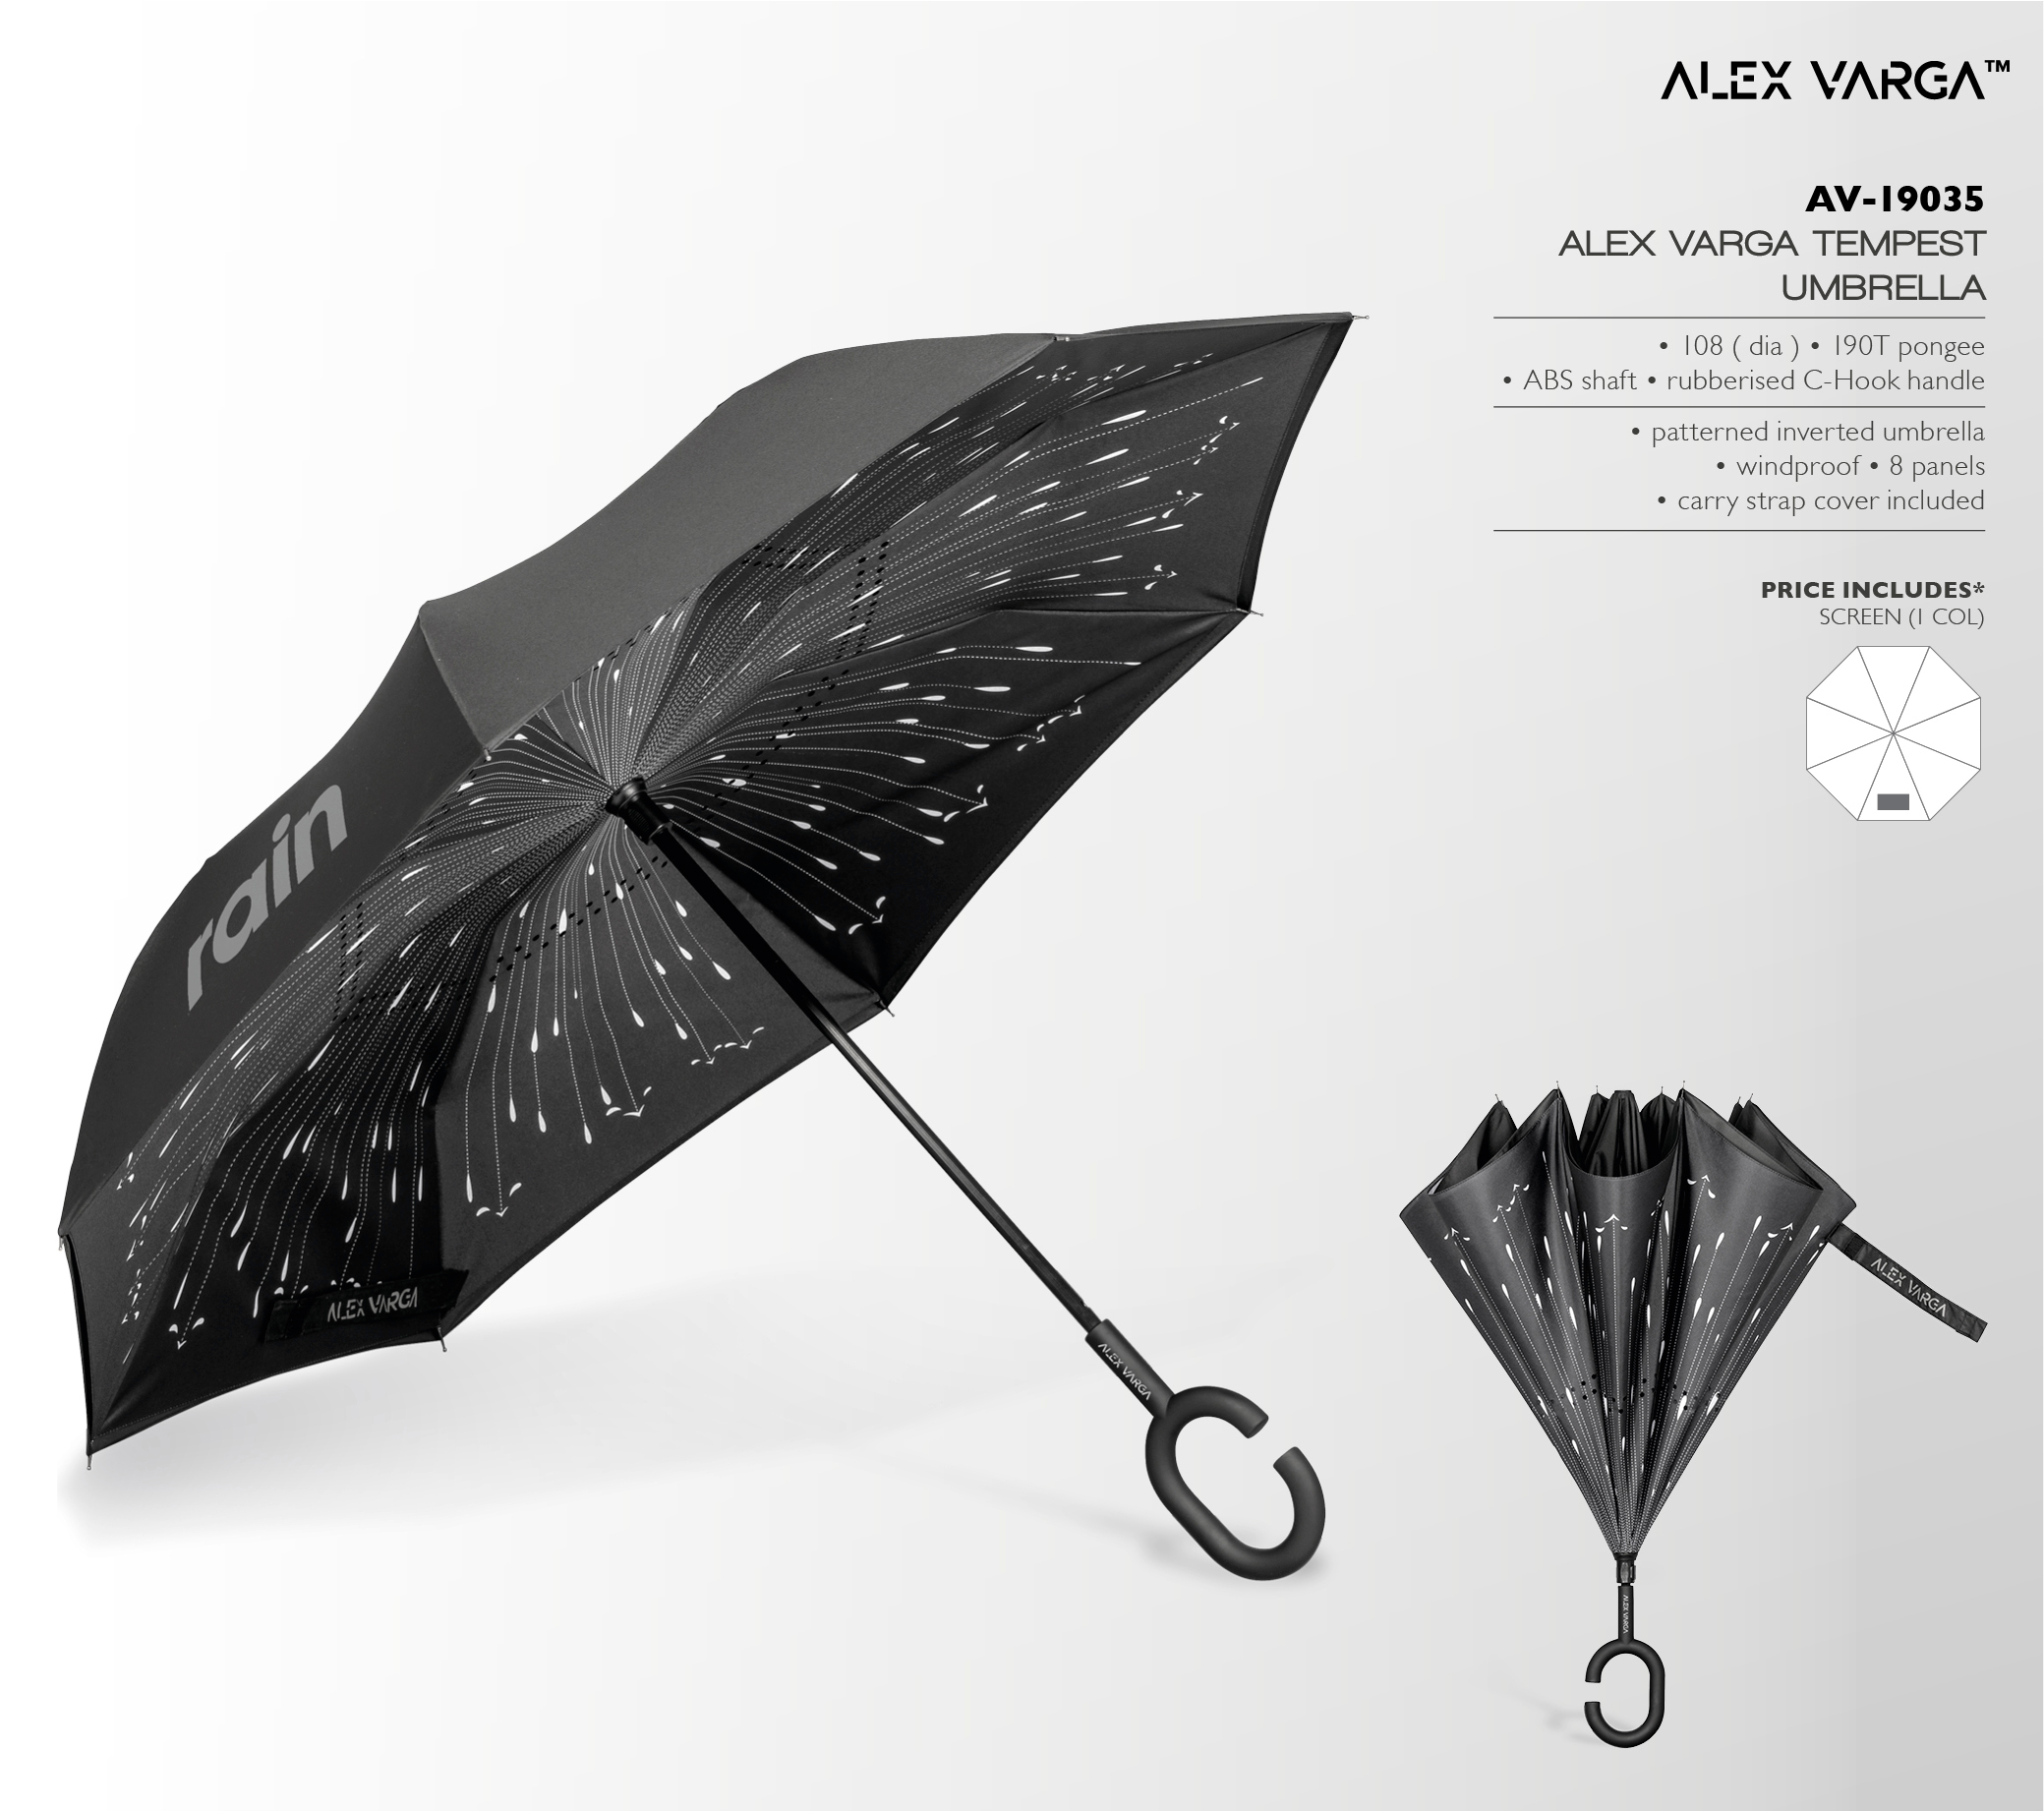 AV-19035 - Alex Varga Tempest Umbrella - Catalogue Image